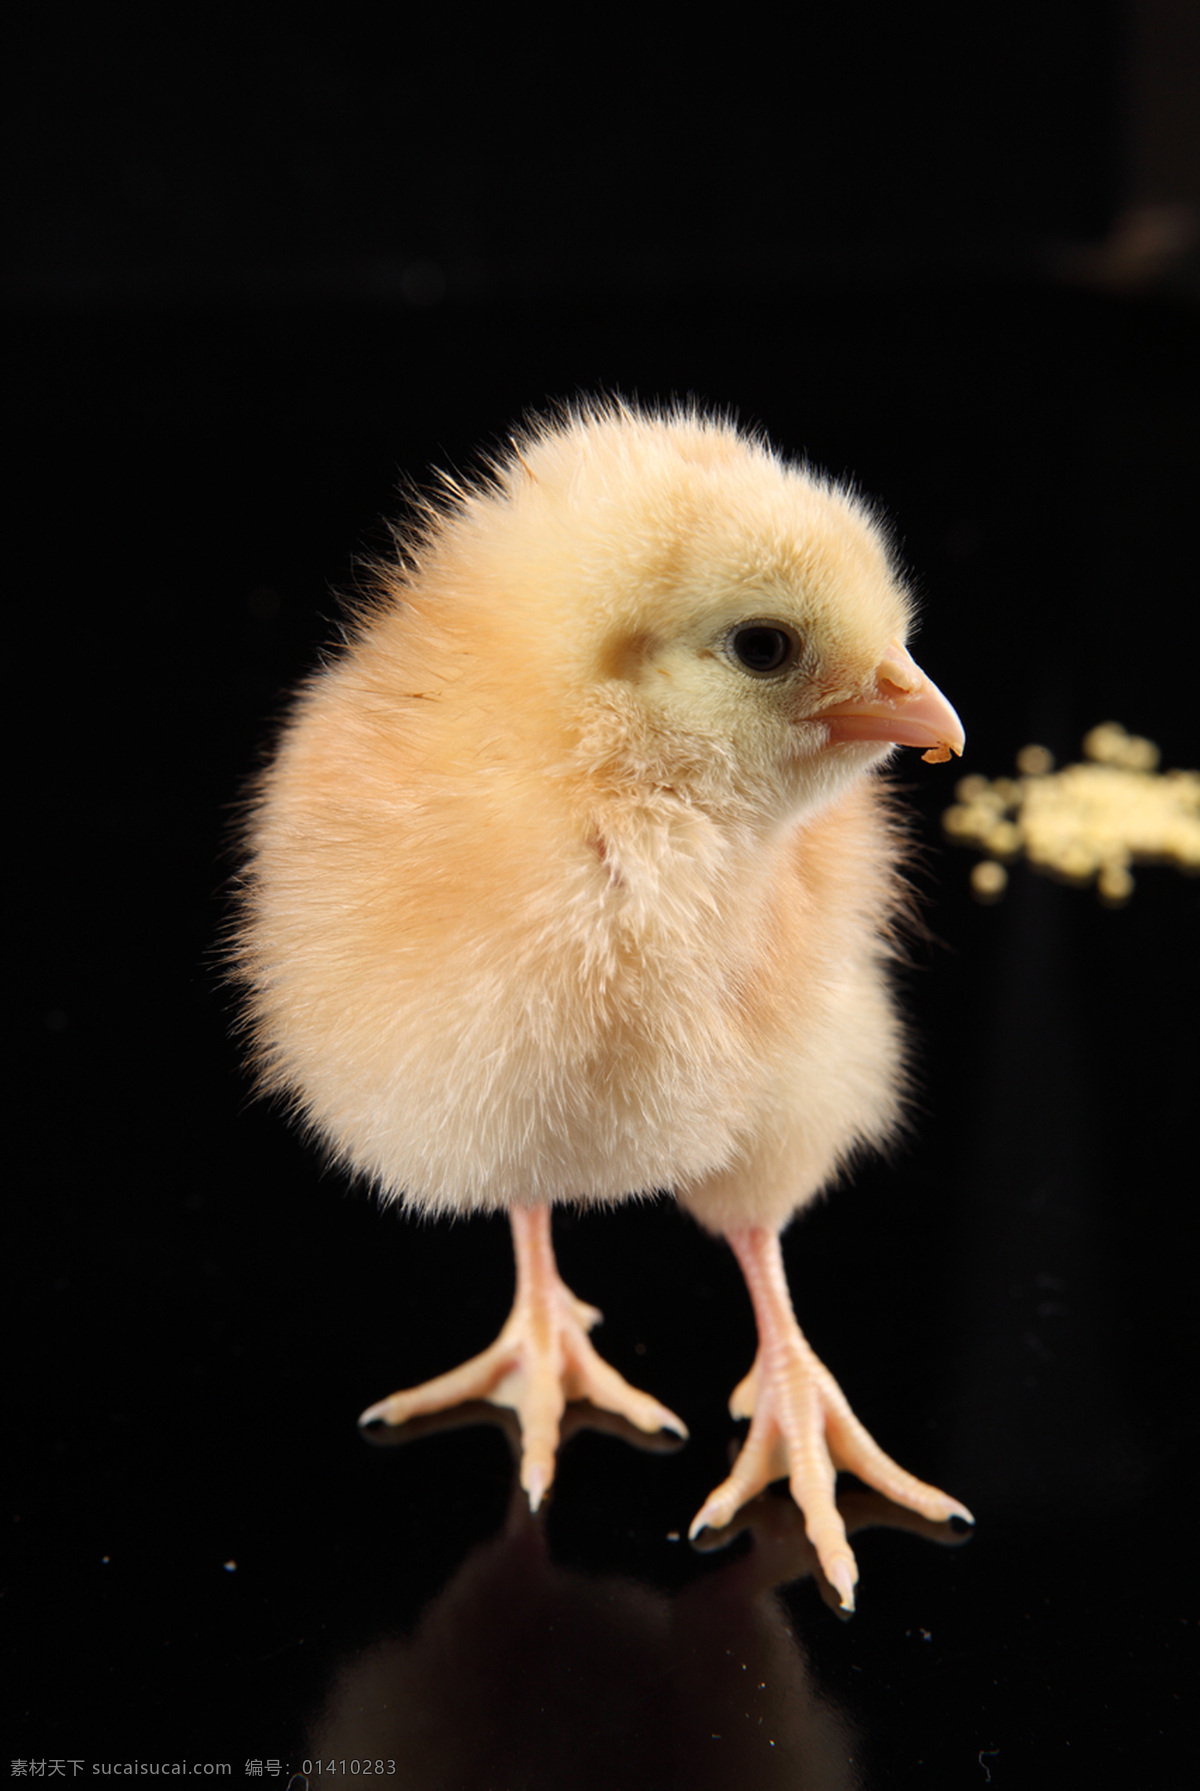 可爱的小鸡 小鸡 雏鸡 家禽 小鸡崽 稚鸡 鸡宝宝 刚出生的小鸡 毛茸茸的小鸡 小生命 孵化 毛茸茸 家禽家畜 生物世界